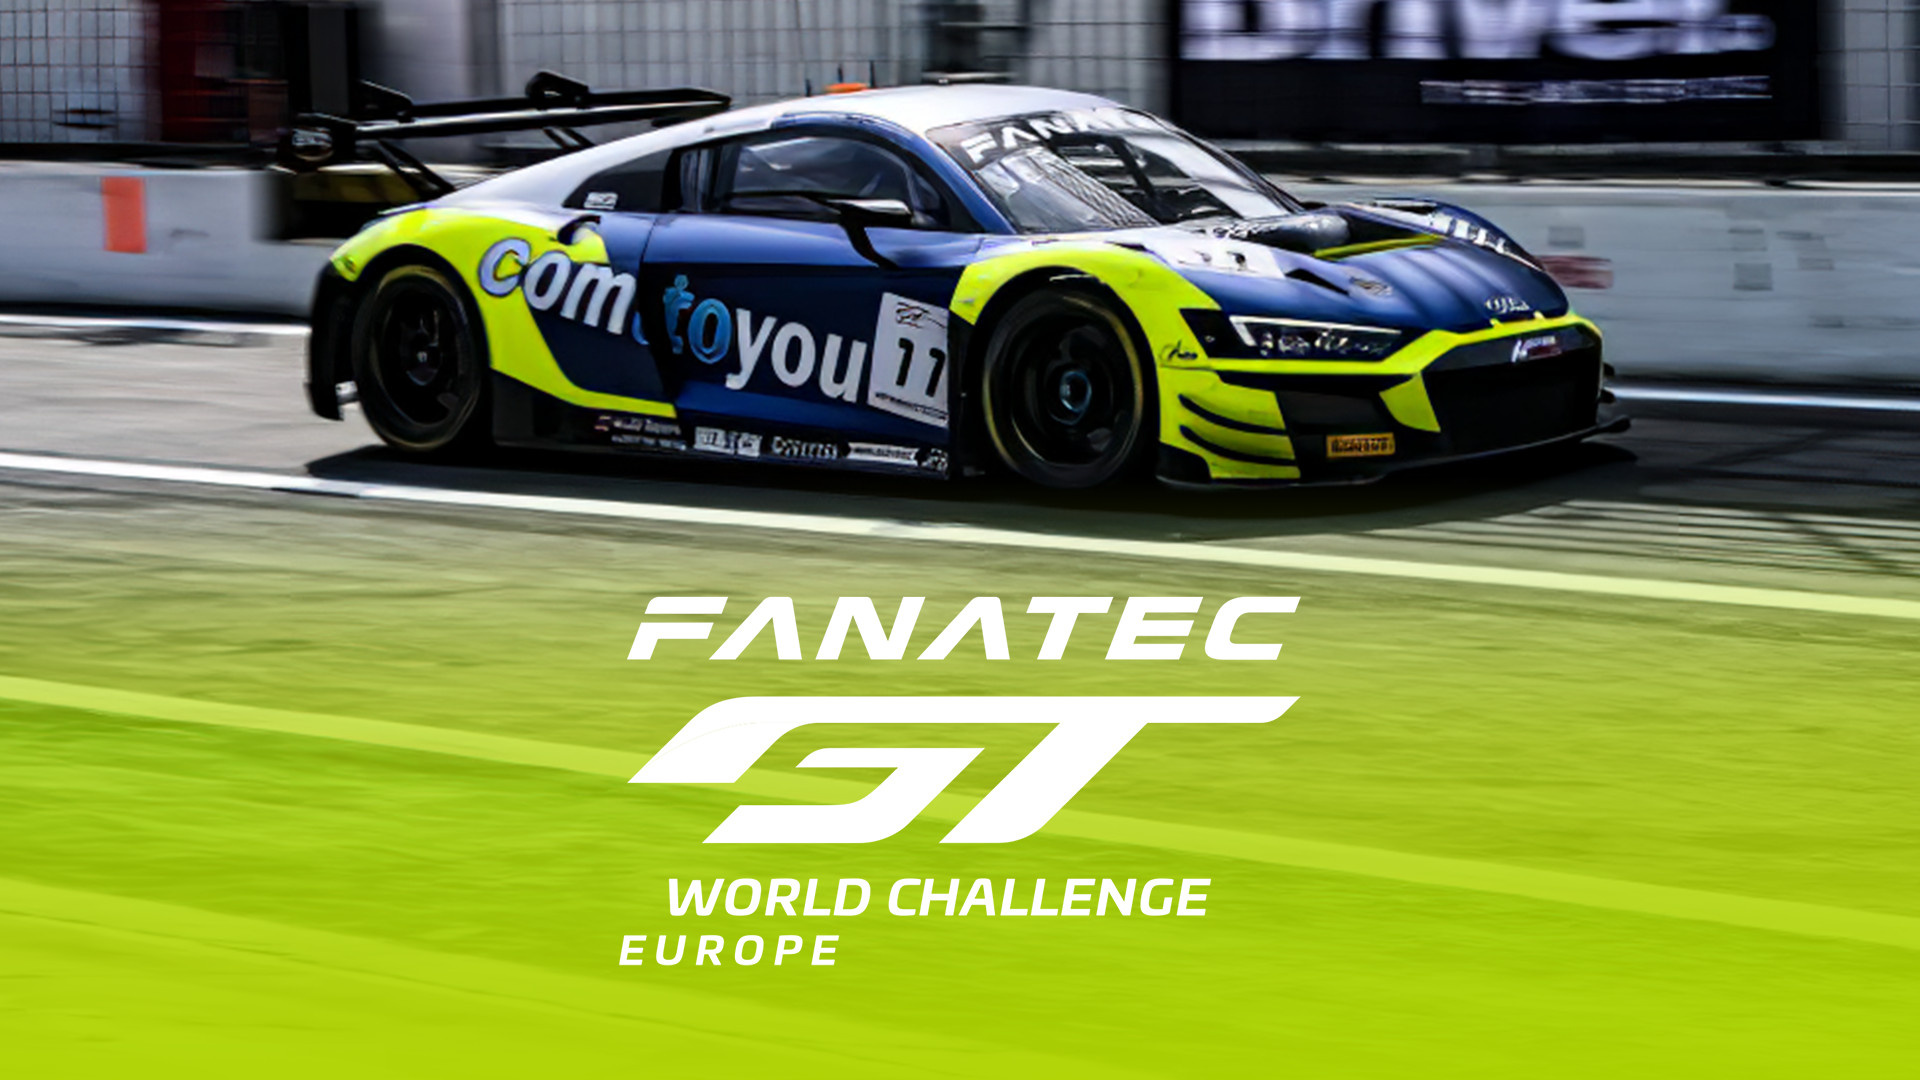 GT World Challenge Europe